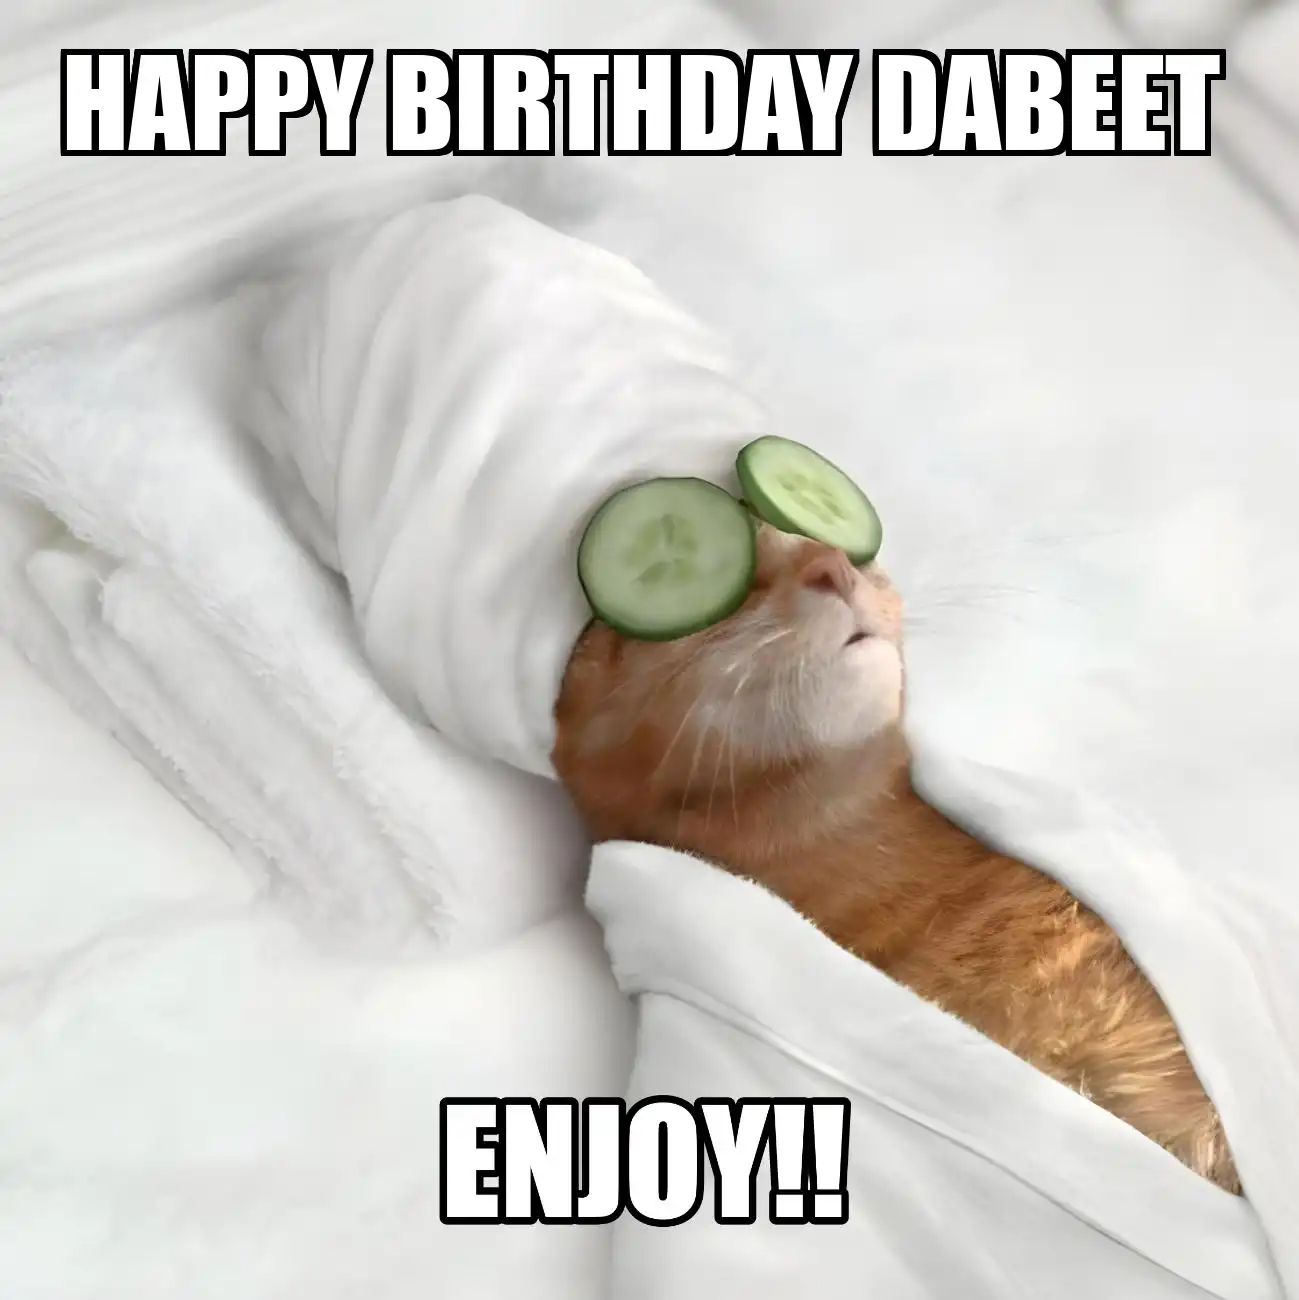 Happy Birthday Dabeet Enjoy Cat Meme